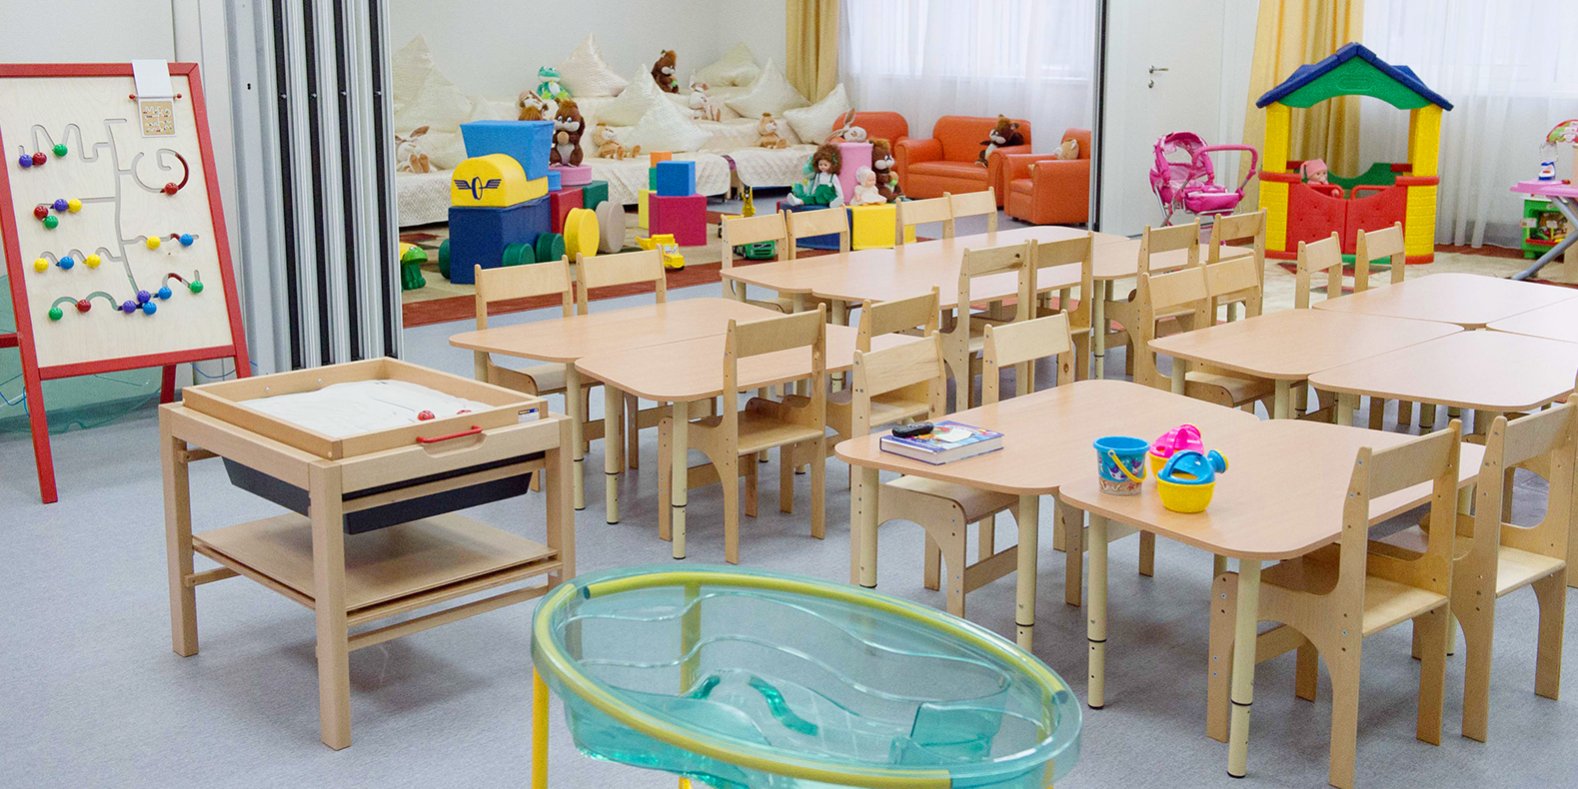 В ТиНАО за 10 лет построено и введено в эксплуатацию 70 детсадов и 31 школа. Фото: сайт мэра Москвы